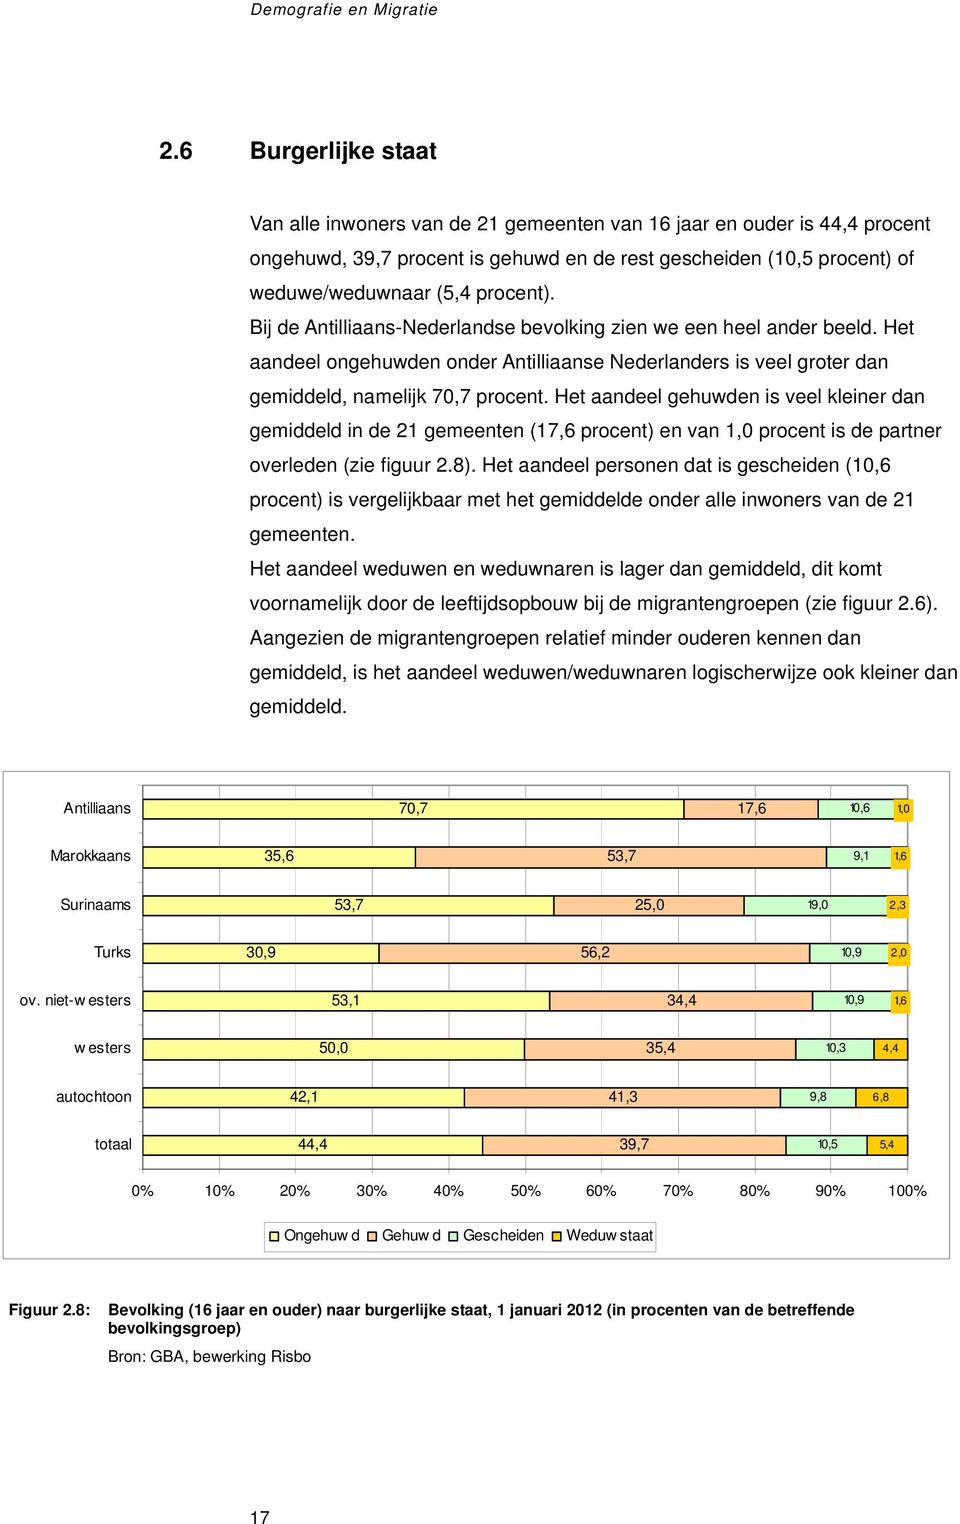 Bij de Antilliaans-Nederlandse bevolking zien we een heel ander beeld. Het aandeel ongehuwden onder Antilliaanse Nederlanders is veel groter dan gemiddeld, namelijk 70,7 procent.